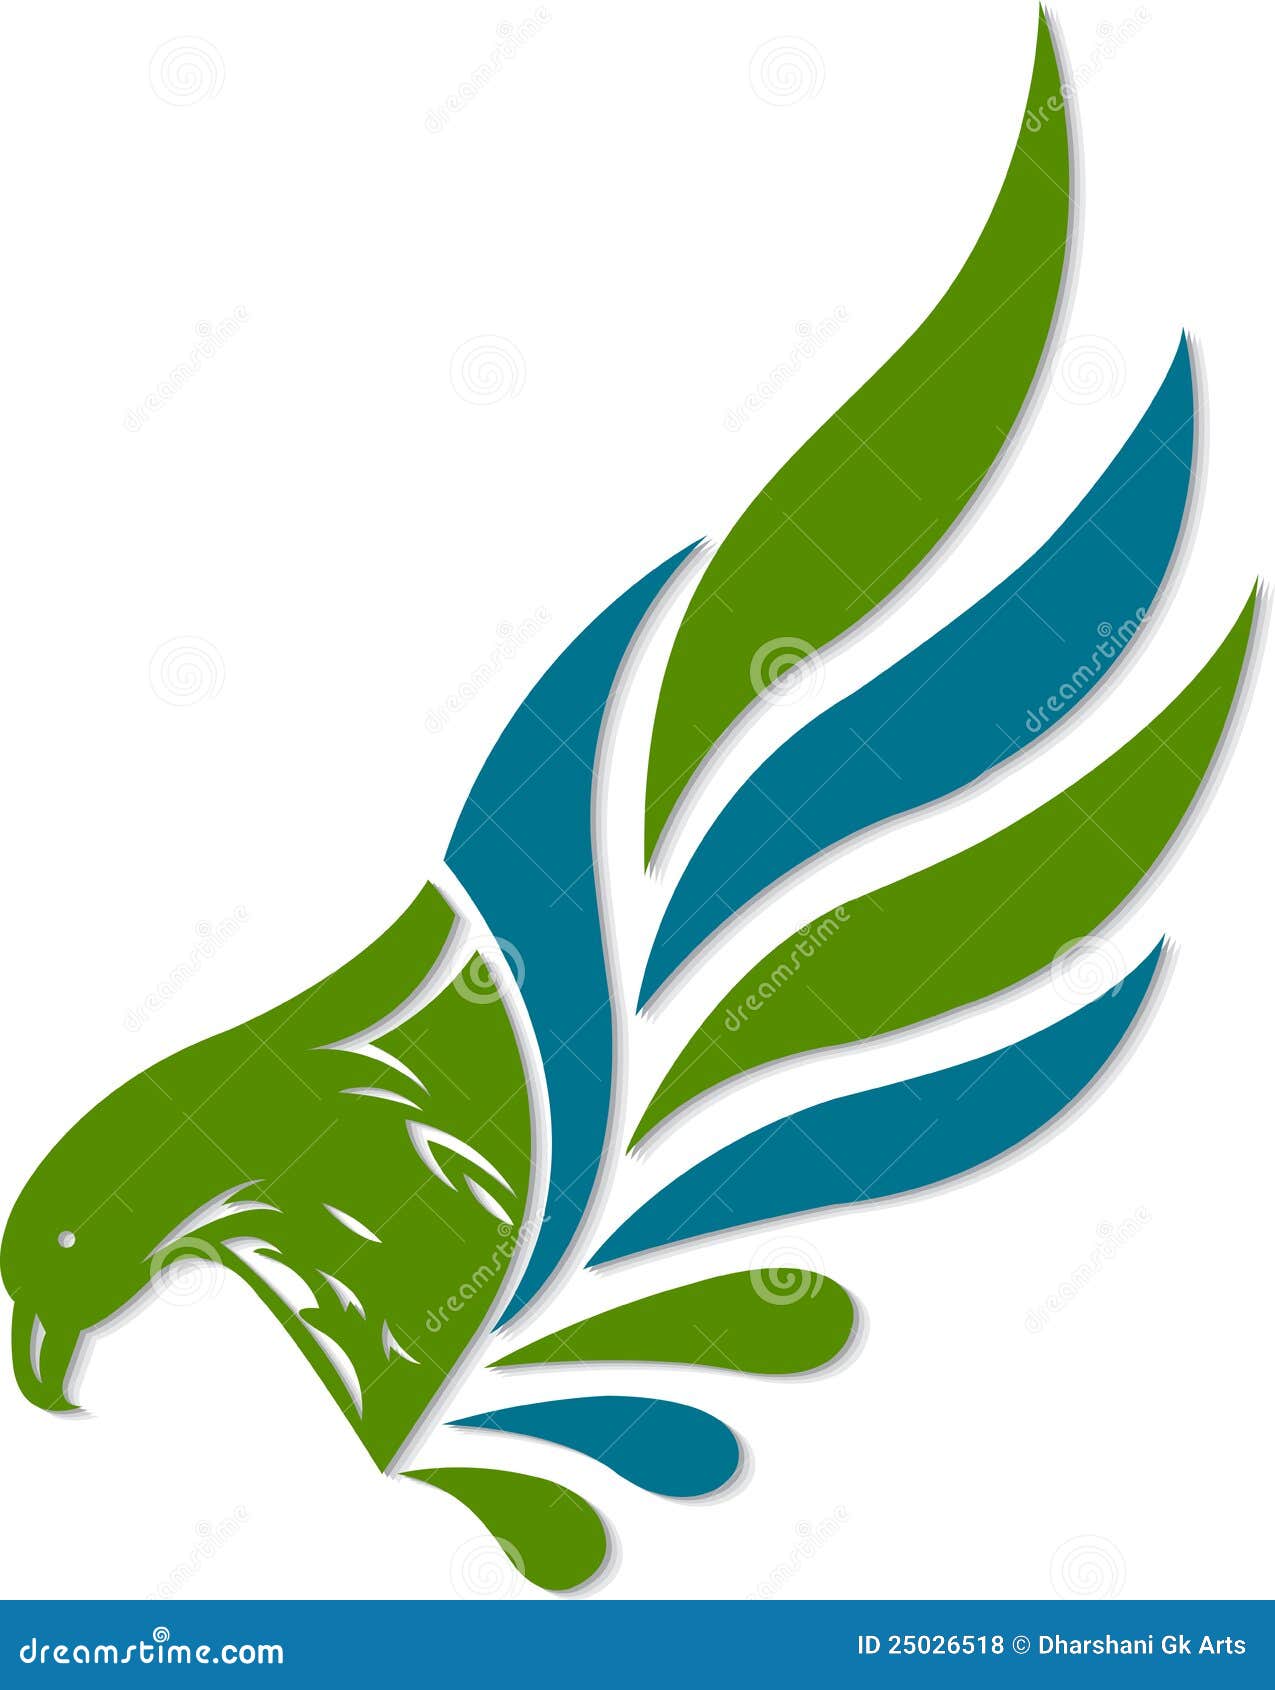 eagle clipart logo - photo #45